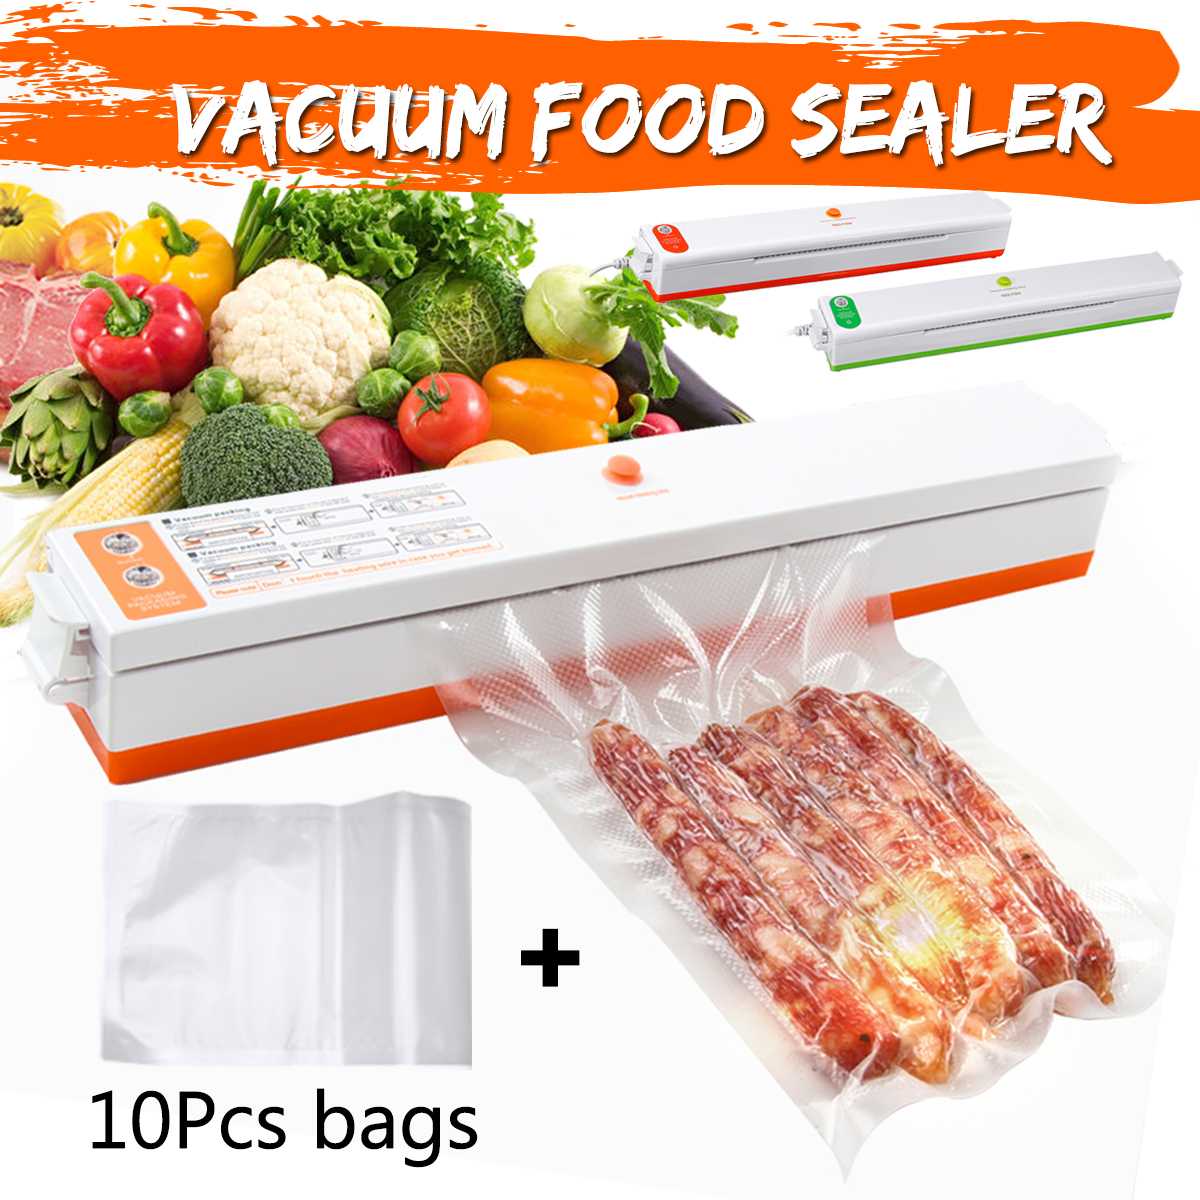 220V Vacuüm Voedsel Sealer Machine Vacuüm Sluitmachine Film Container Huishoudelijke Voedsel Sealer Saver Omvat Met Vacuüm Verpakker